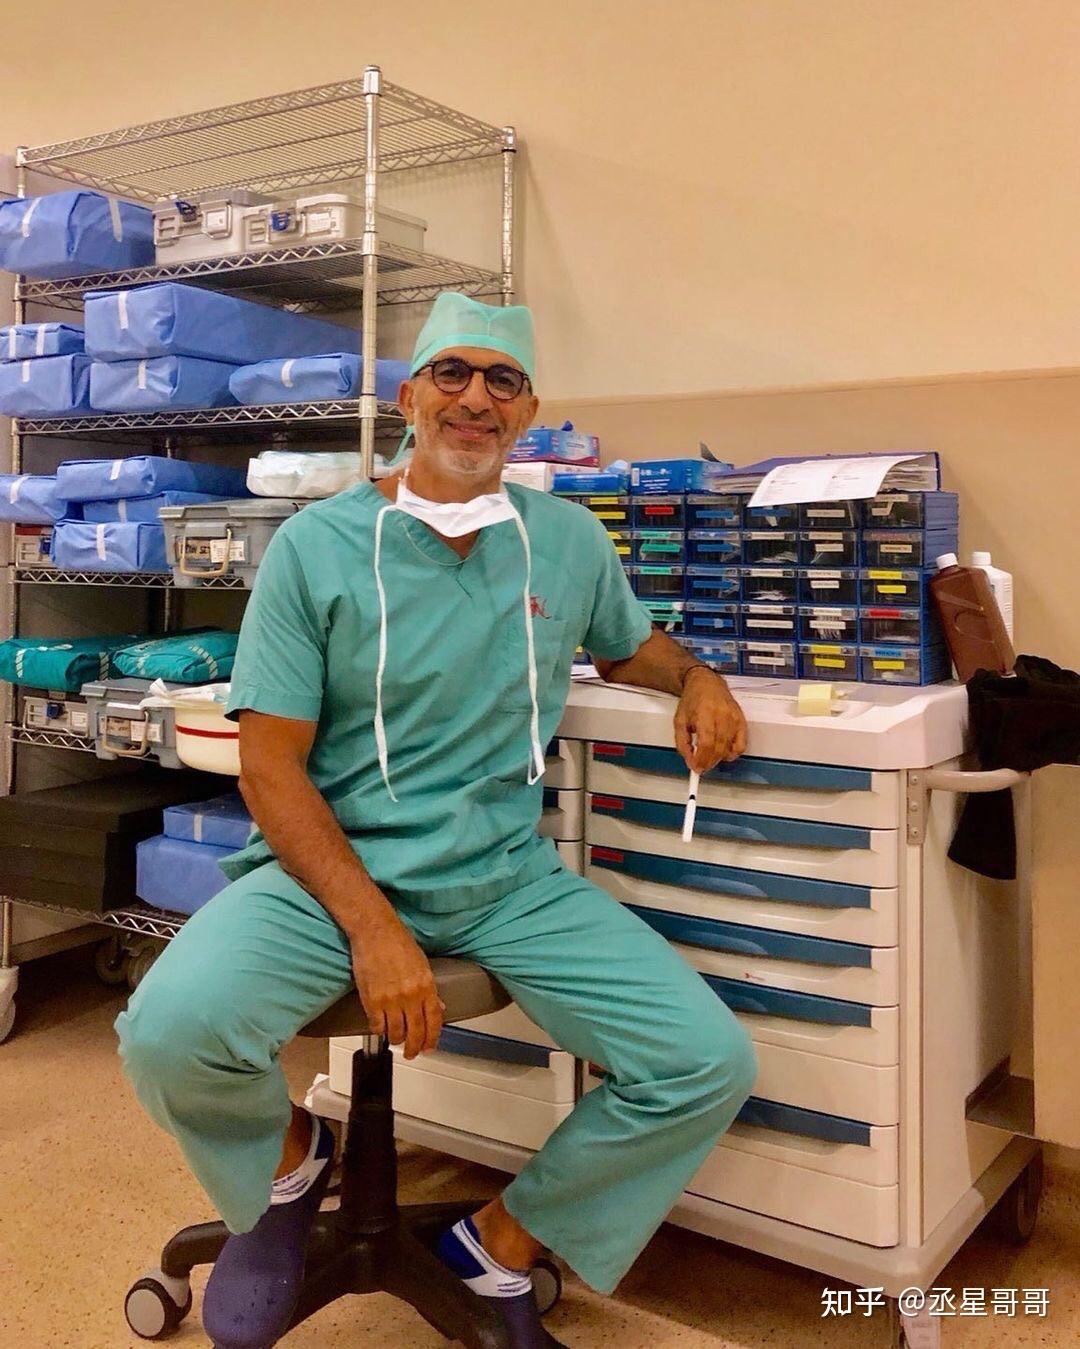 自称利比亚联合国医疗队的外科医生博士研究生学位骗局